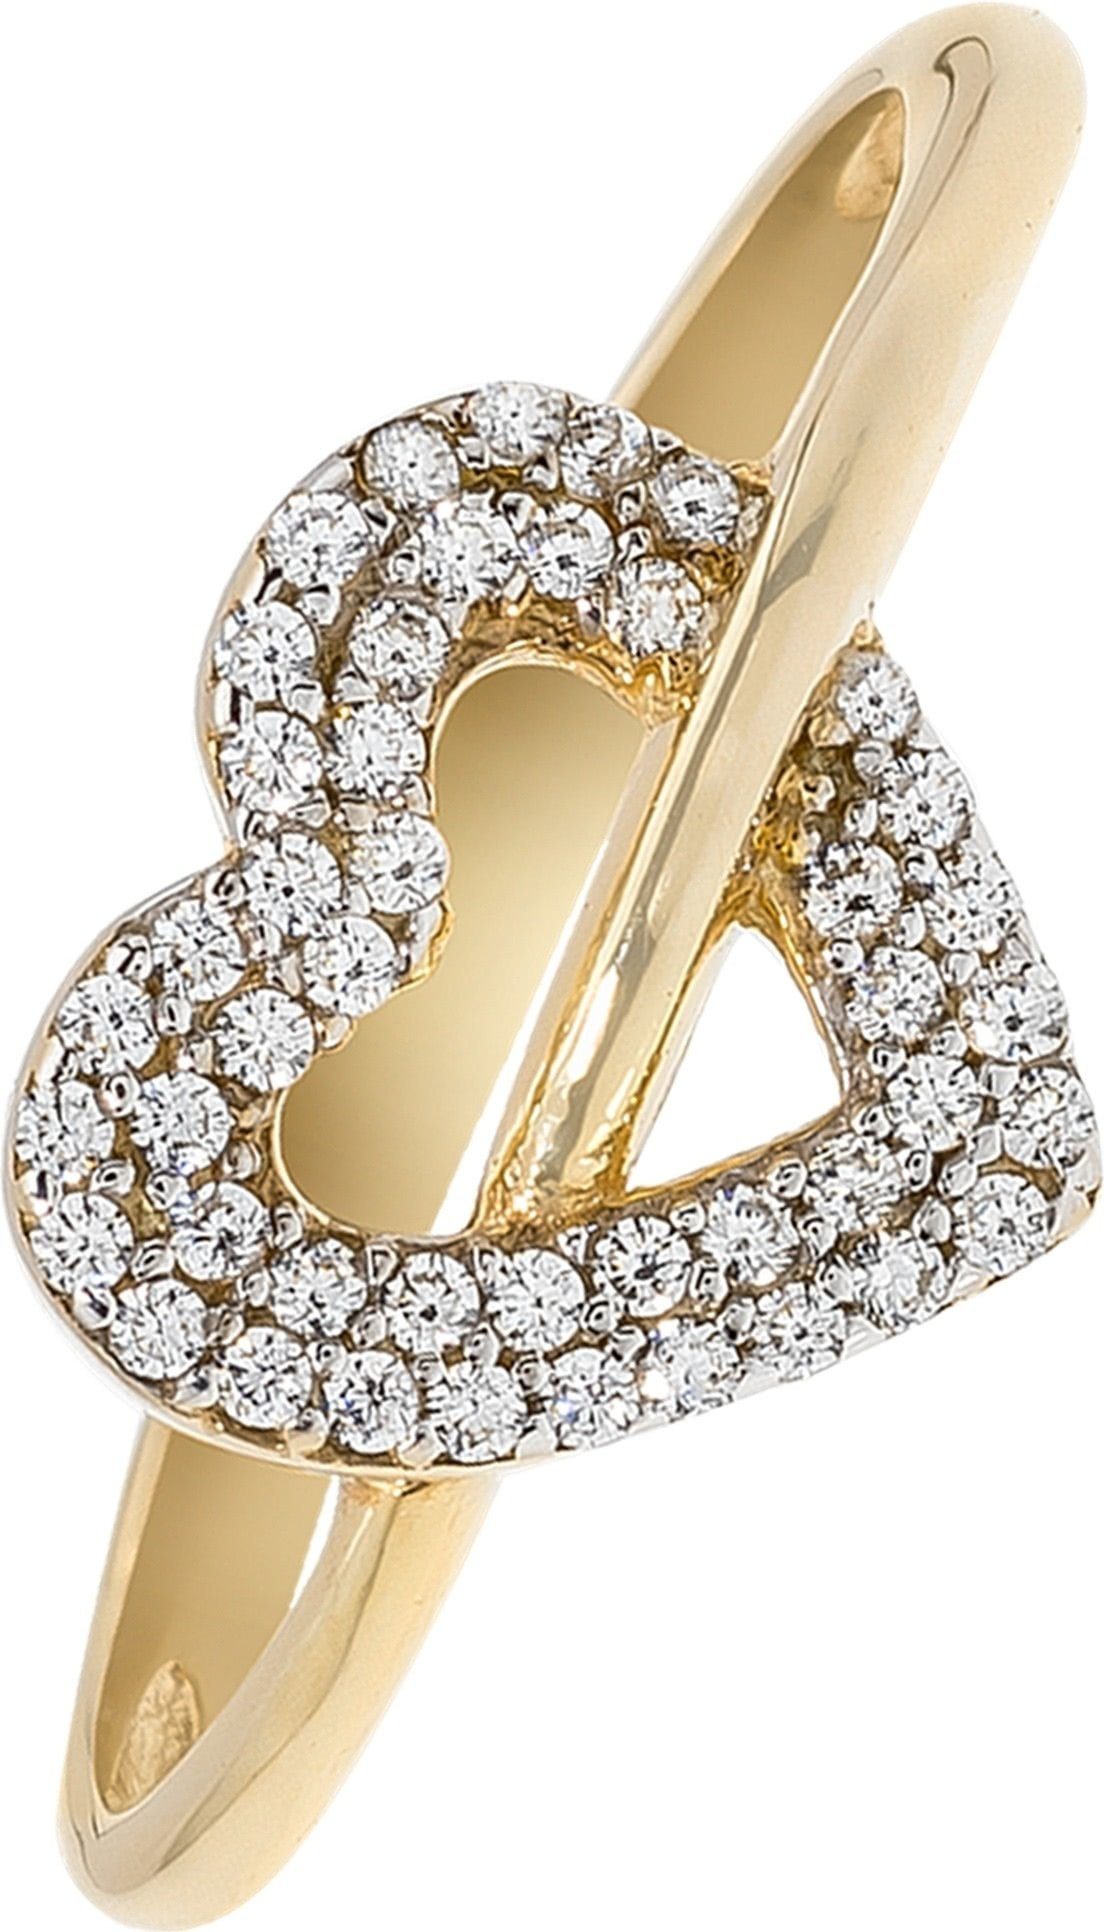 Balia Goldring Balia Ring für Damen 8K Gold 333 (Fingerring), Fingerring Größe 60 (19,1), 333 Gelbgold - 8 Karat (Herz gold) Gold 33